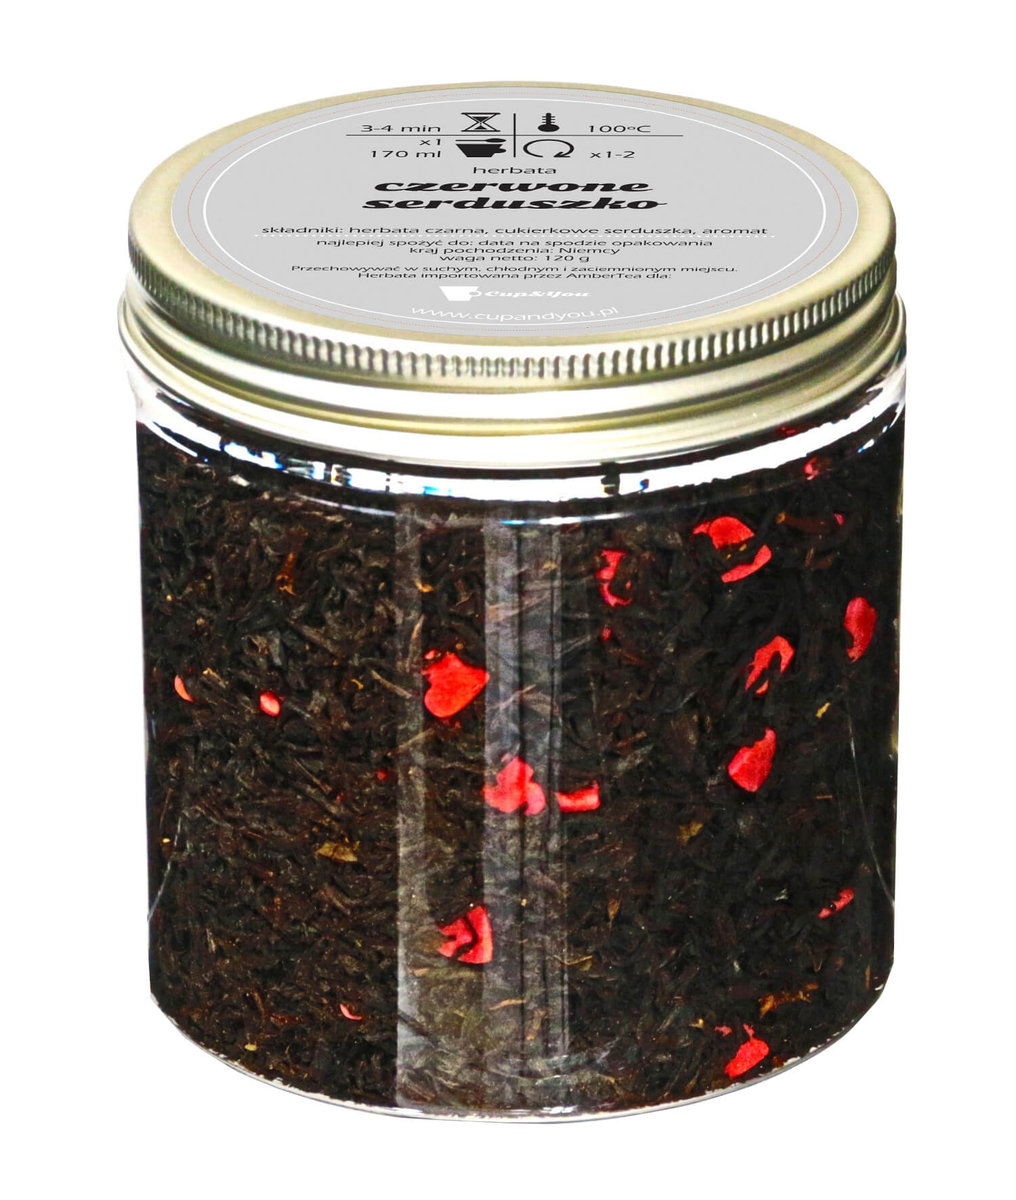 Herbata czarna smakowa CUP&YOU, czerwone serduszko, 120 g